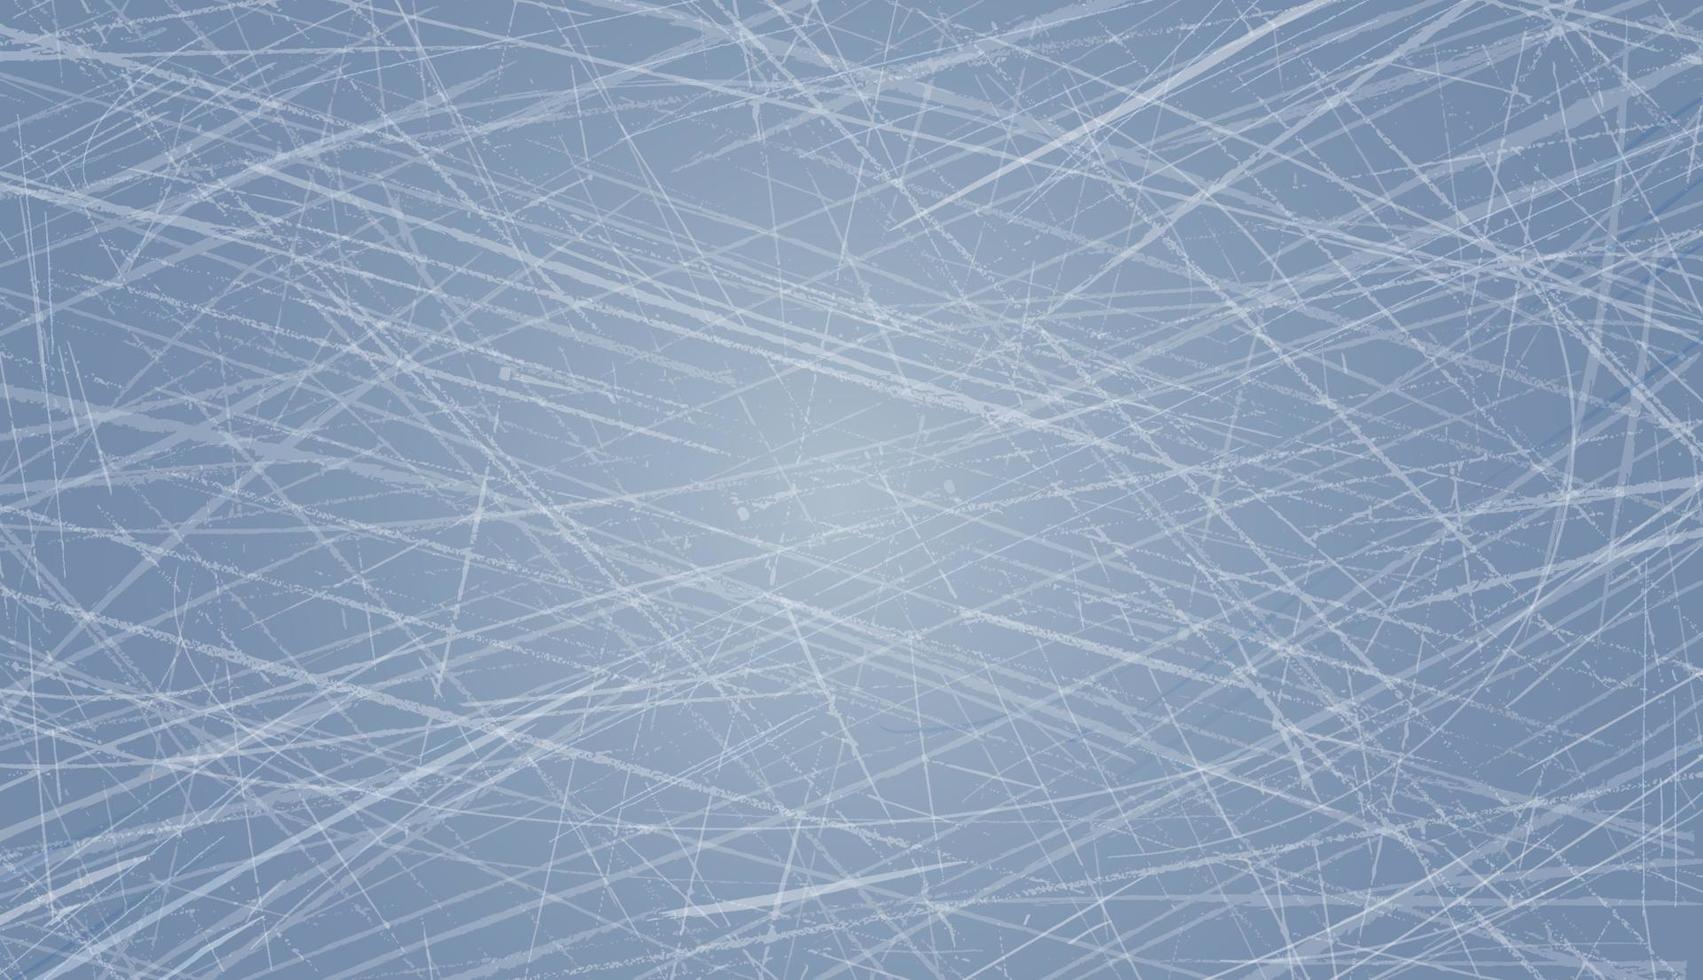 Oberflächenstruktur der Bahn. Winterhintergrund mit blauem Eis. Hockeyfeld, Eislaufarena Tapete. Vektor-Illustration vektor